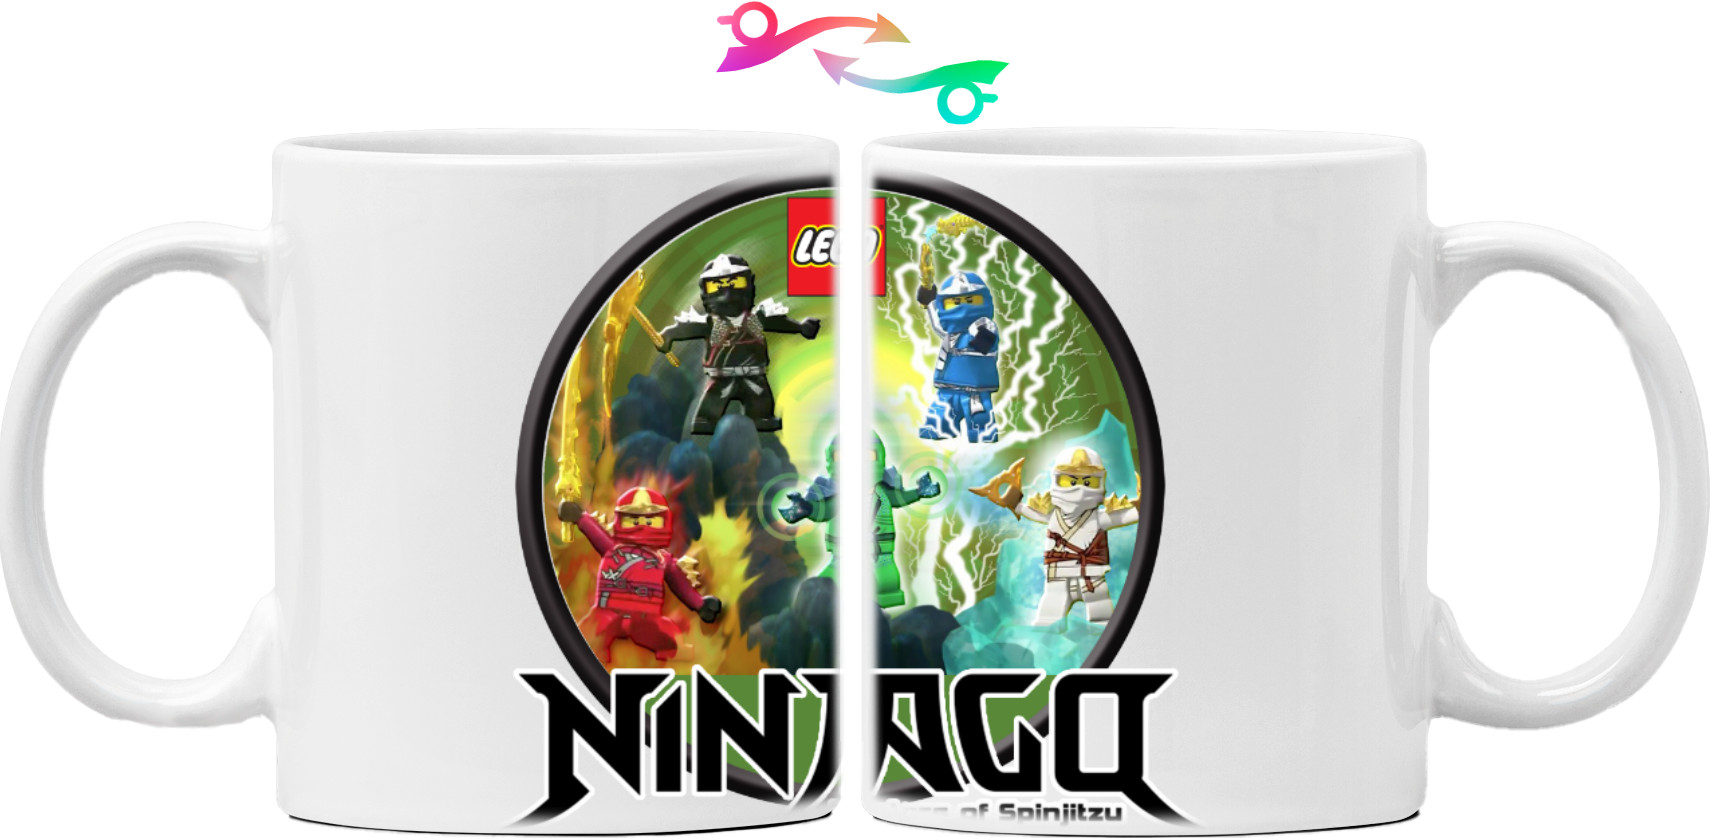 Lego Ninjago 3